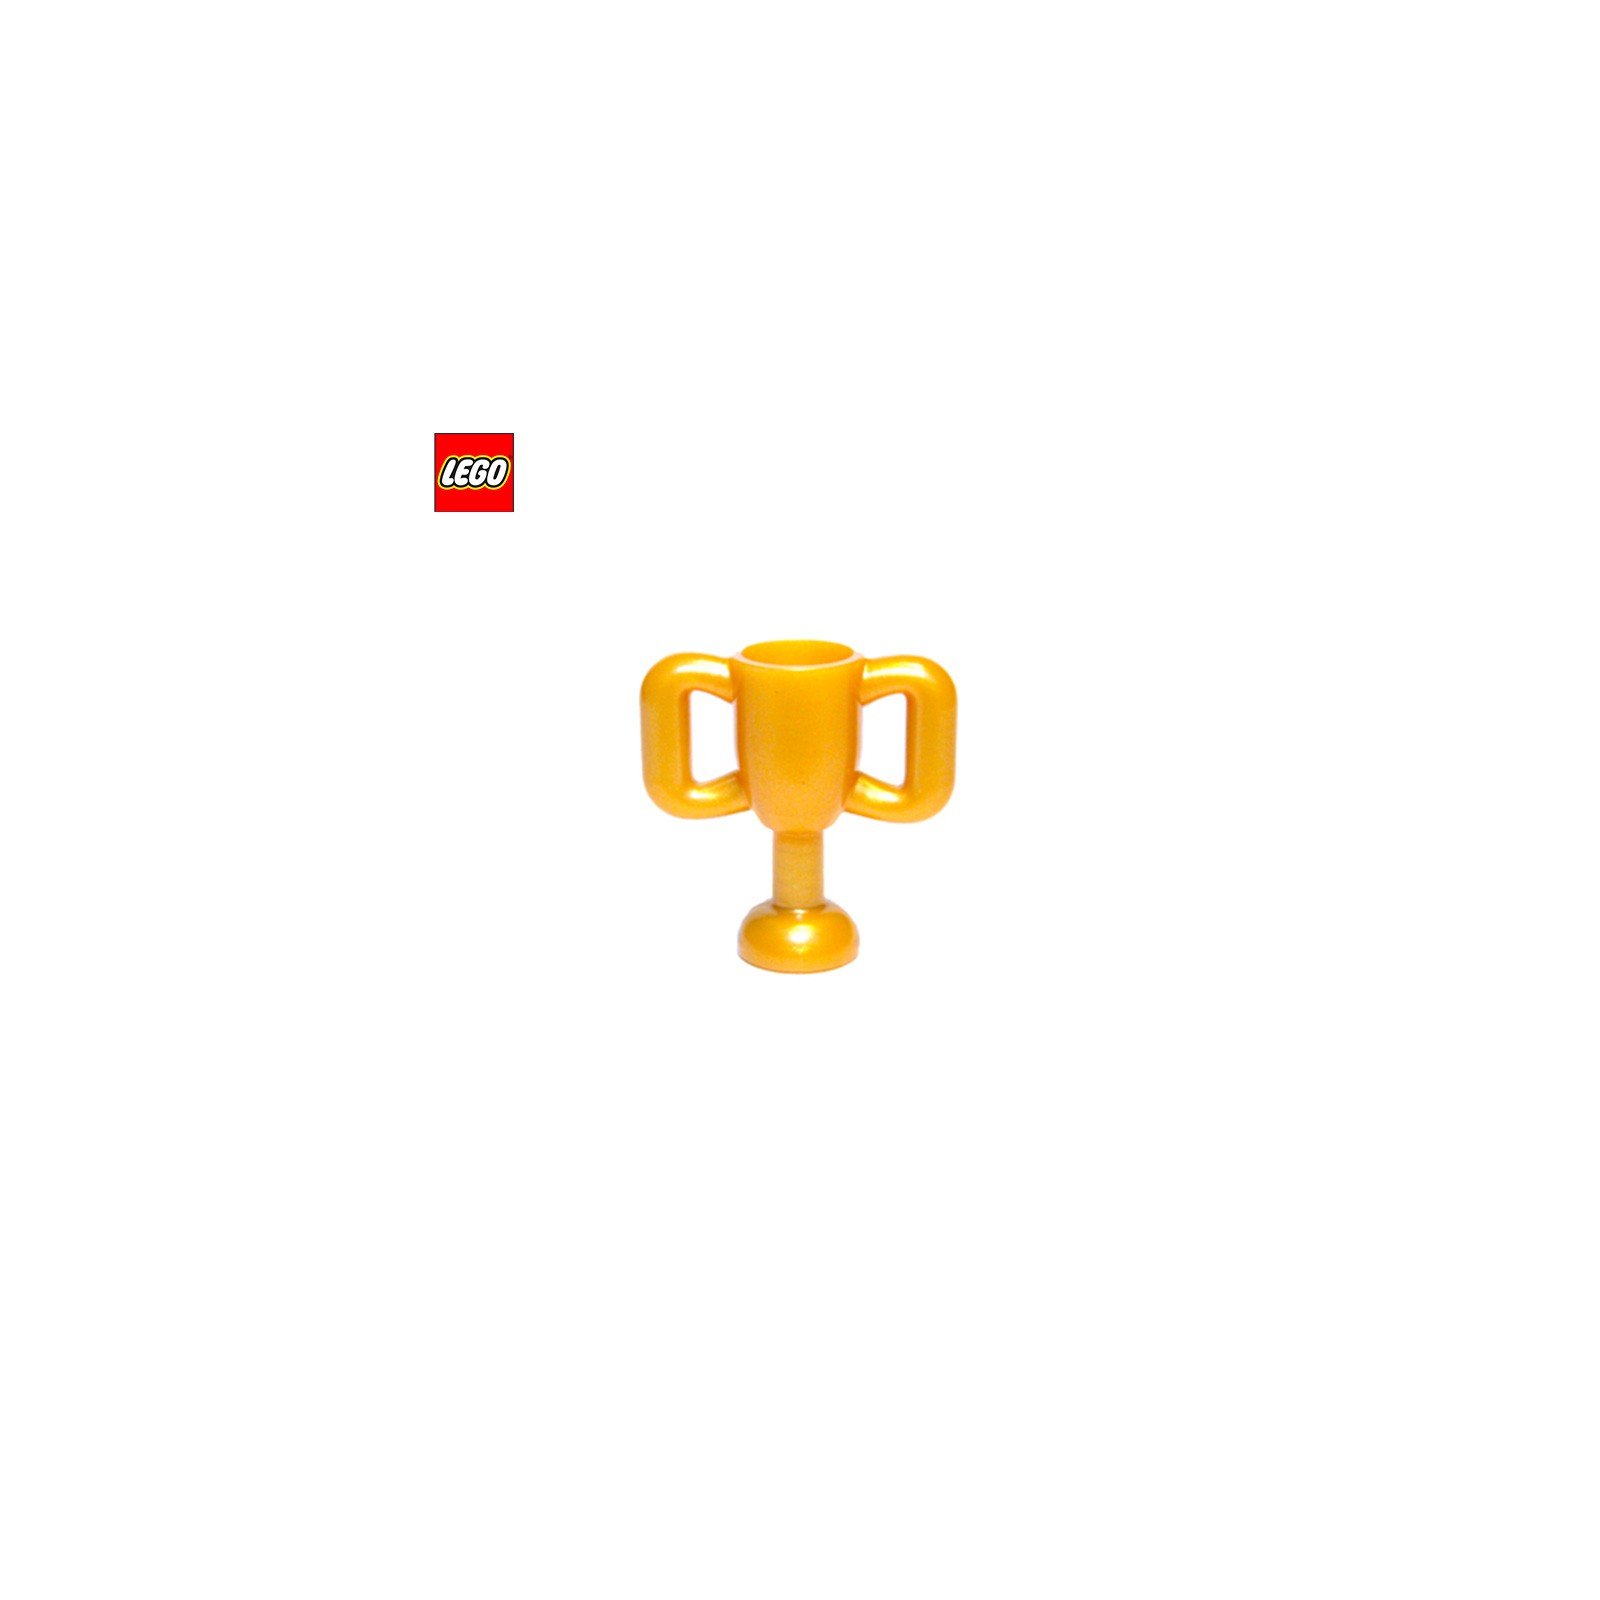 Coupe / Trophée - Pièce LEGO® 10172